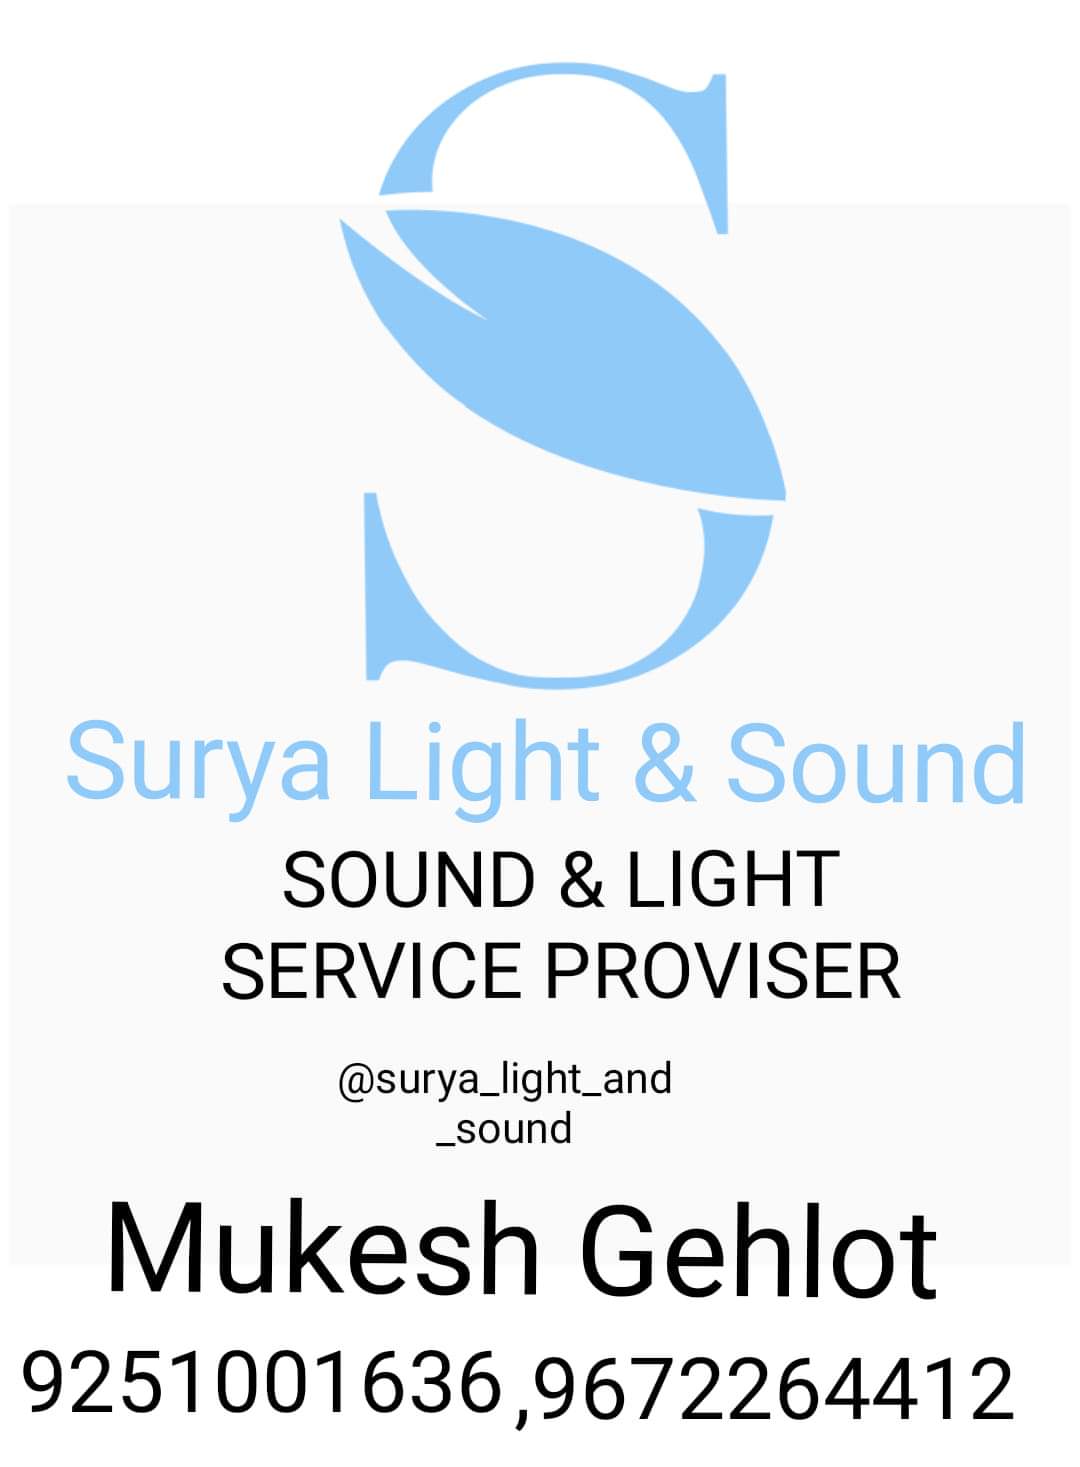 Surya Light & Sound